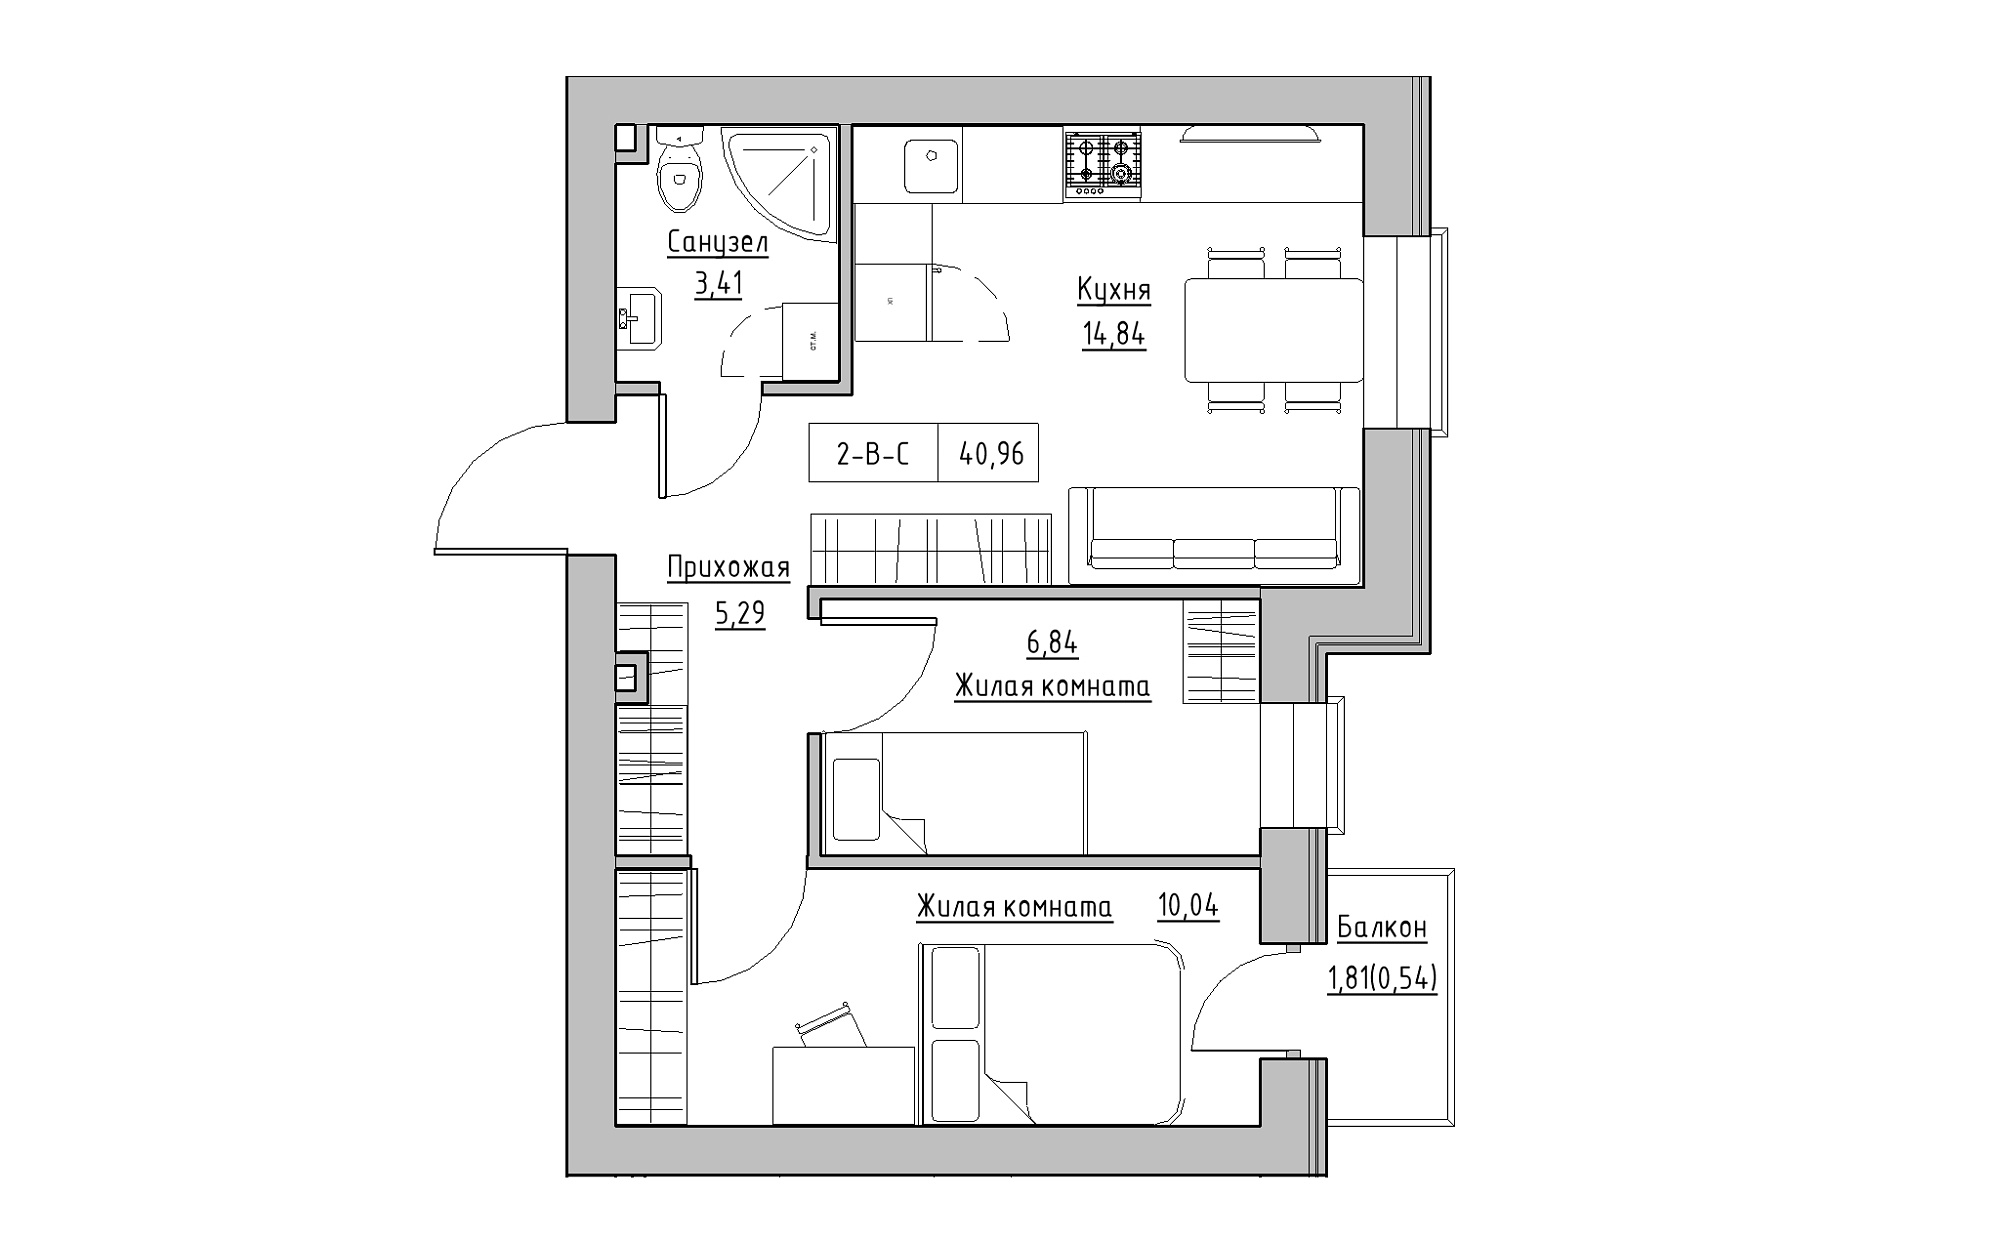 Планування 2-к квартира площею 40.96м2, KS-022-03/0010.